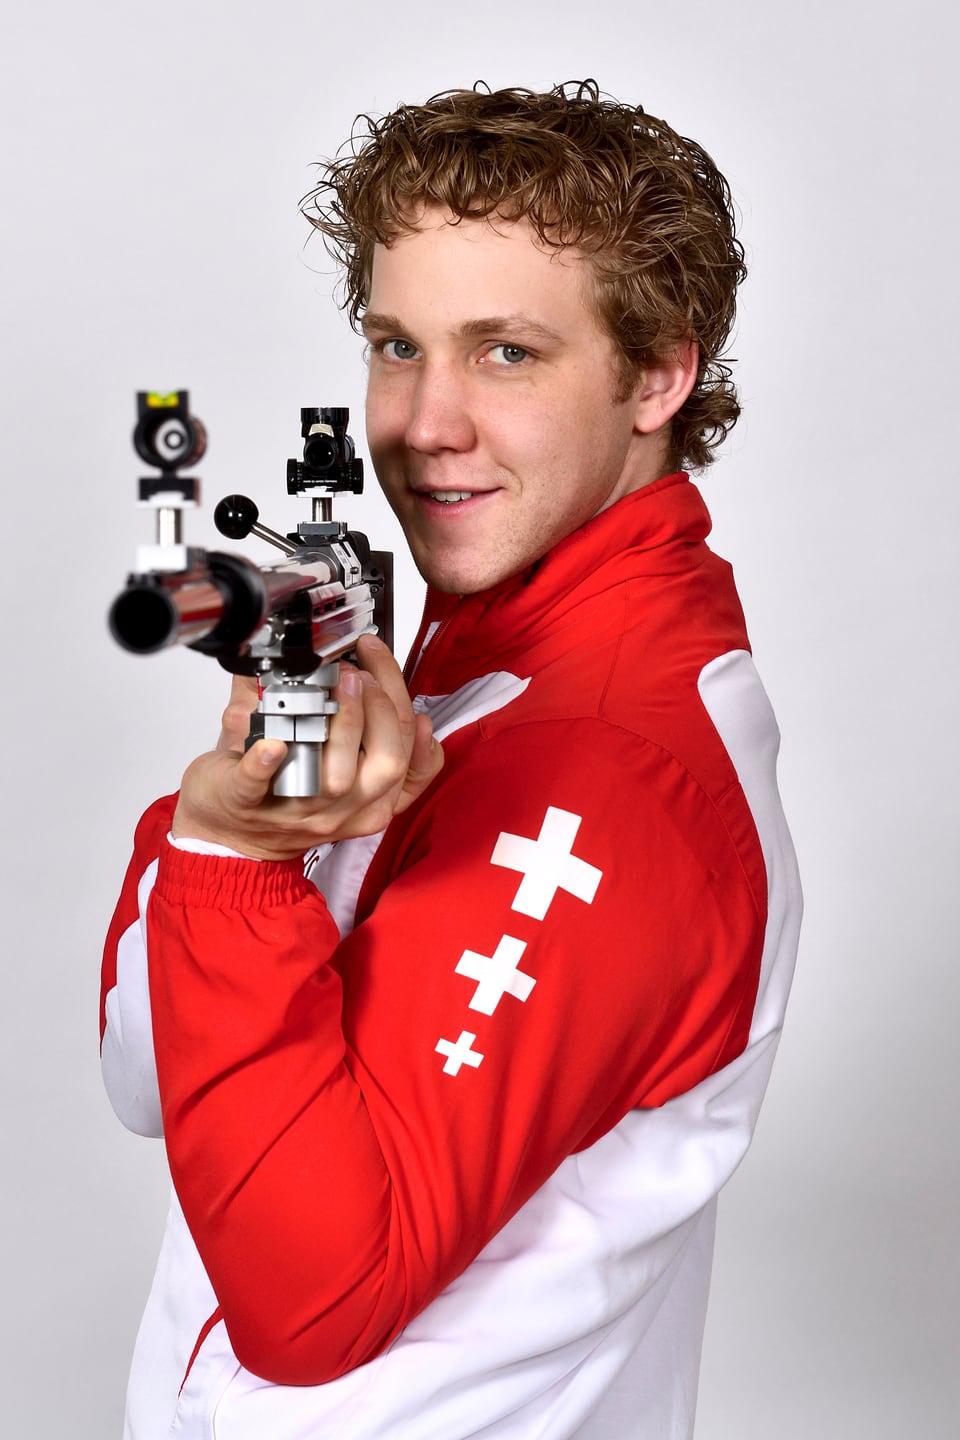 Junger Mann mit einem Sportgewehr in einem rot-weissen-Trainingsanzug mit Schweizer Kreuzen drauf